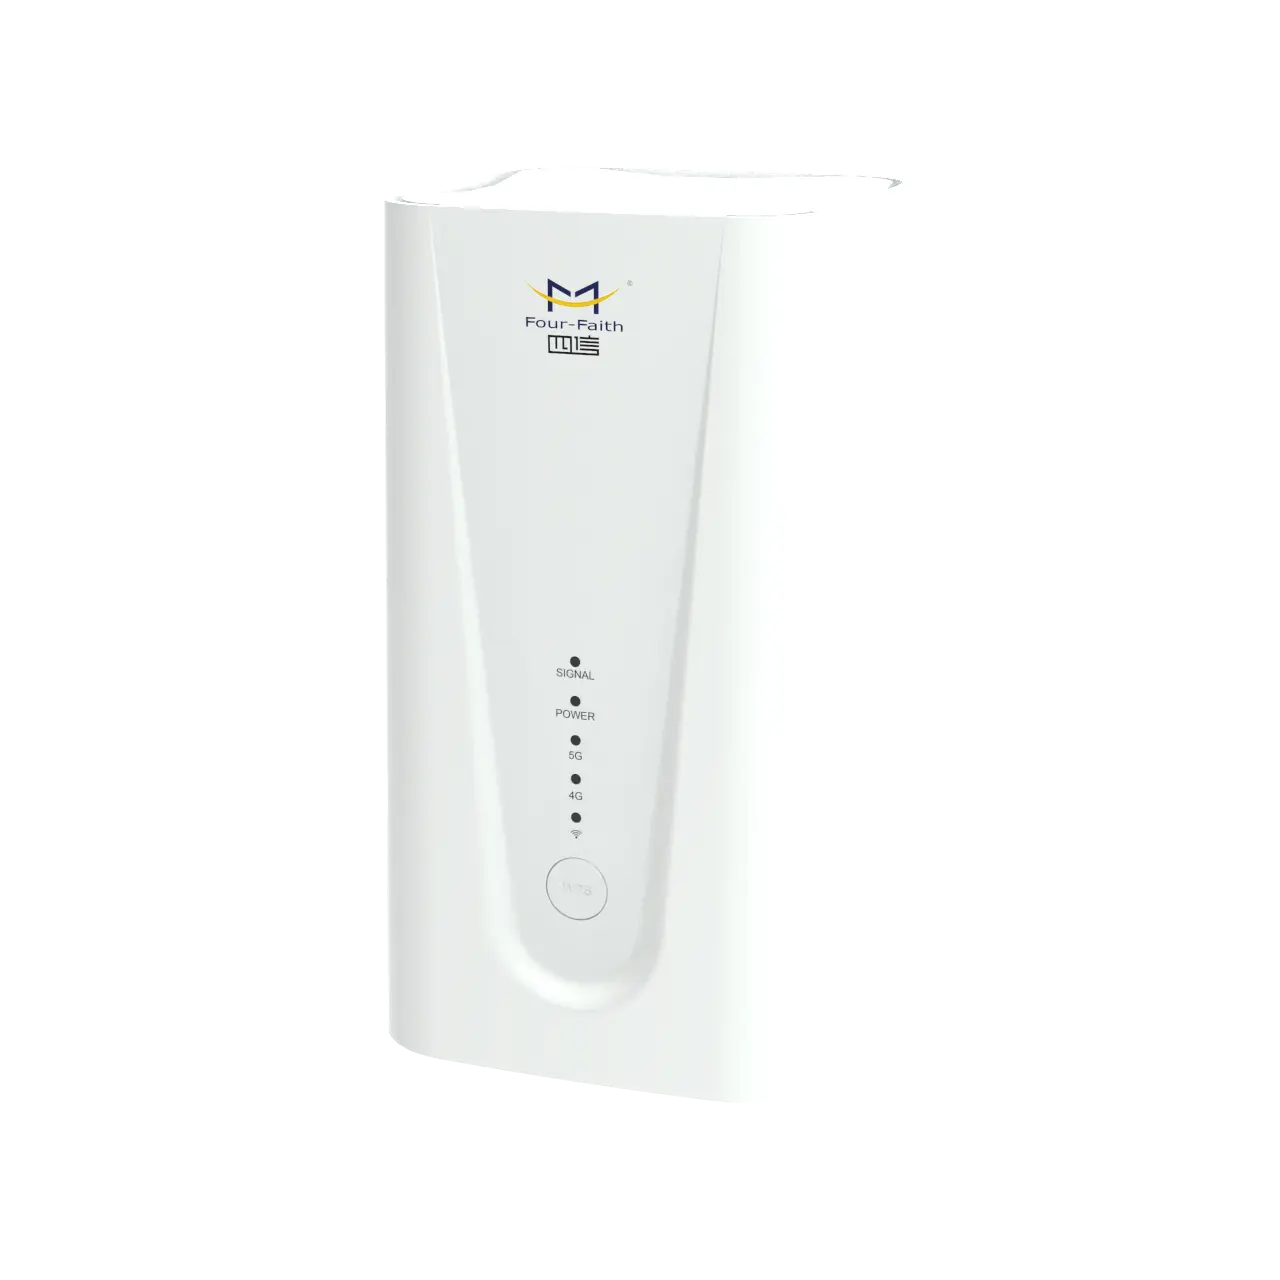 جهاز التوجيه الخلوي Four fith 5G CPE 5G CPE معدات أماكن عمل العملاء 5G WIFI6 جهاز توجيه مع Sim